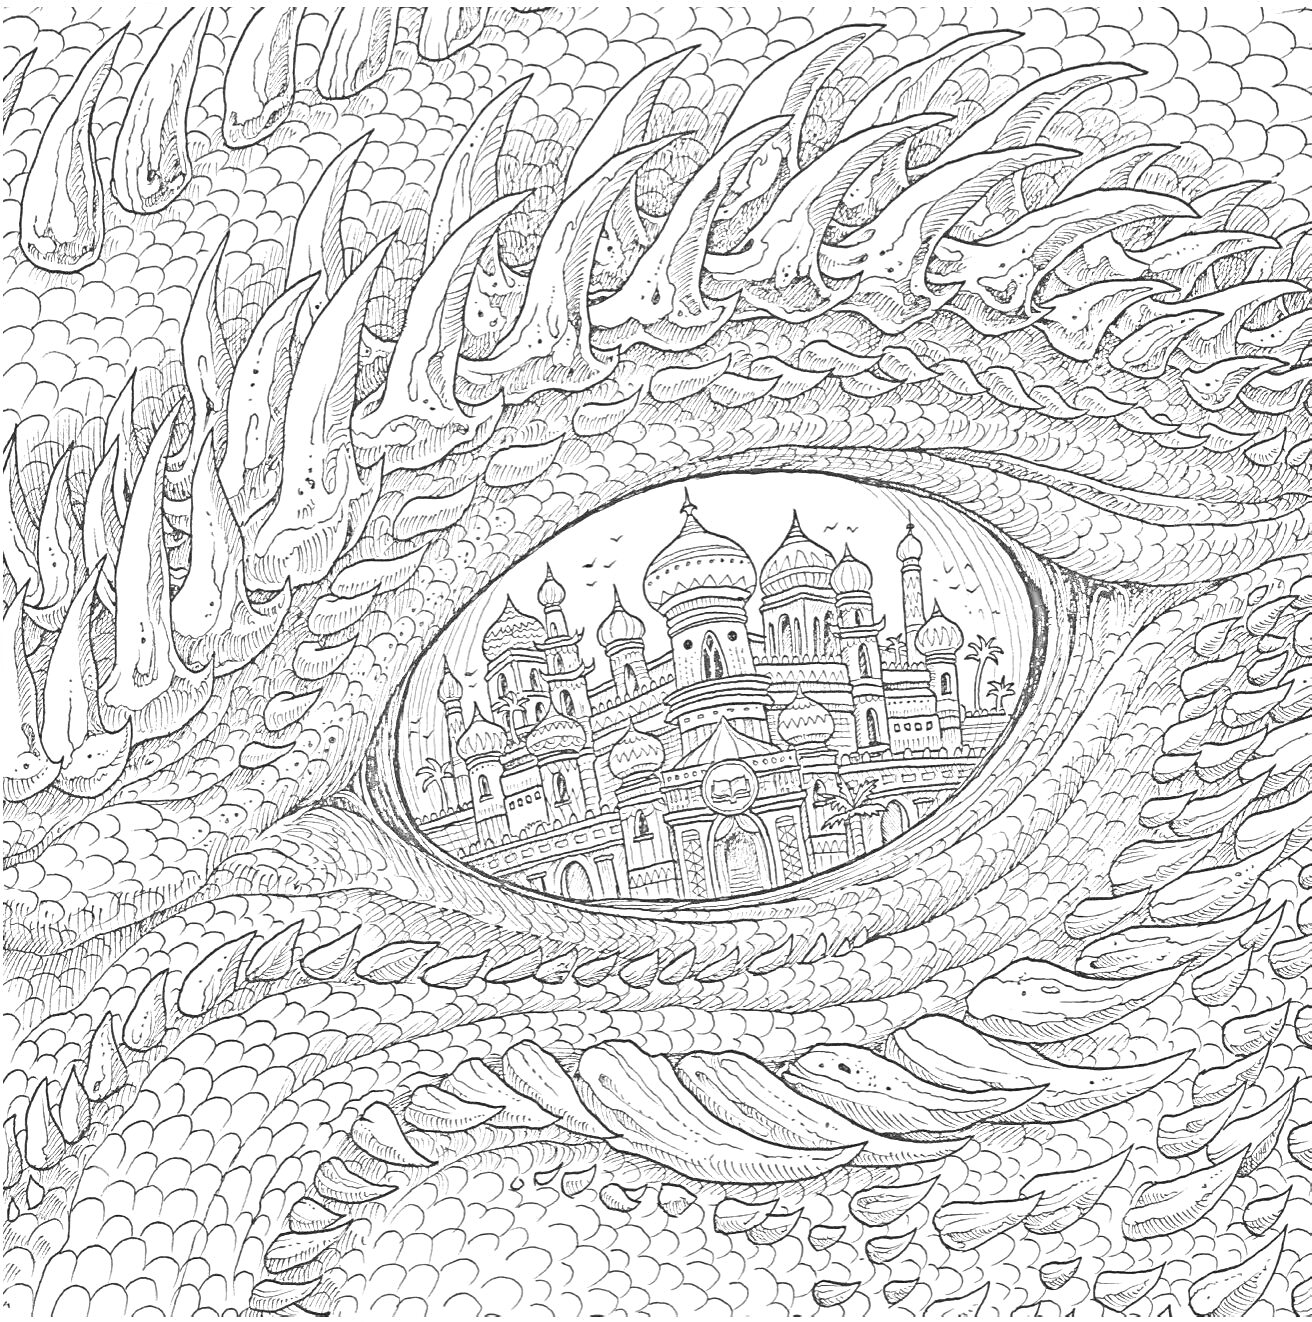 Раскраска Глаз дракона с отражением архитектурного комплекса с куполами и минаретами